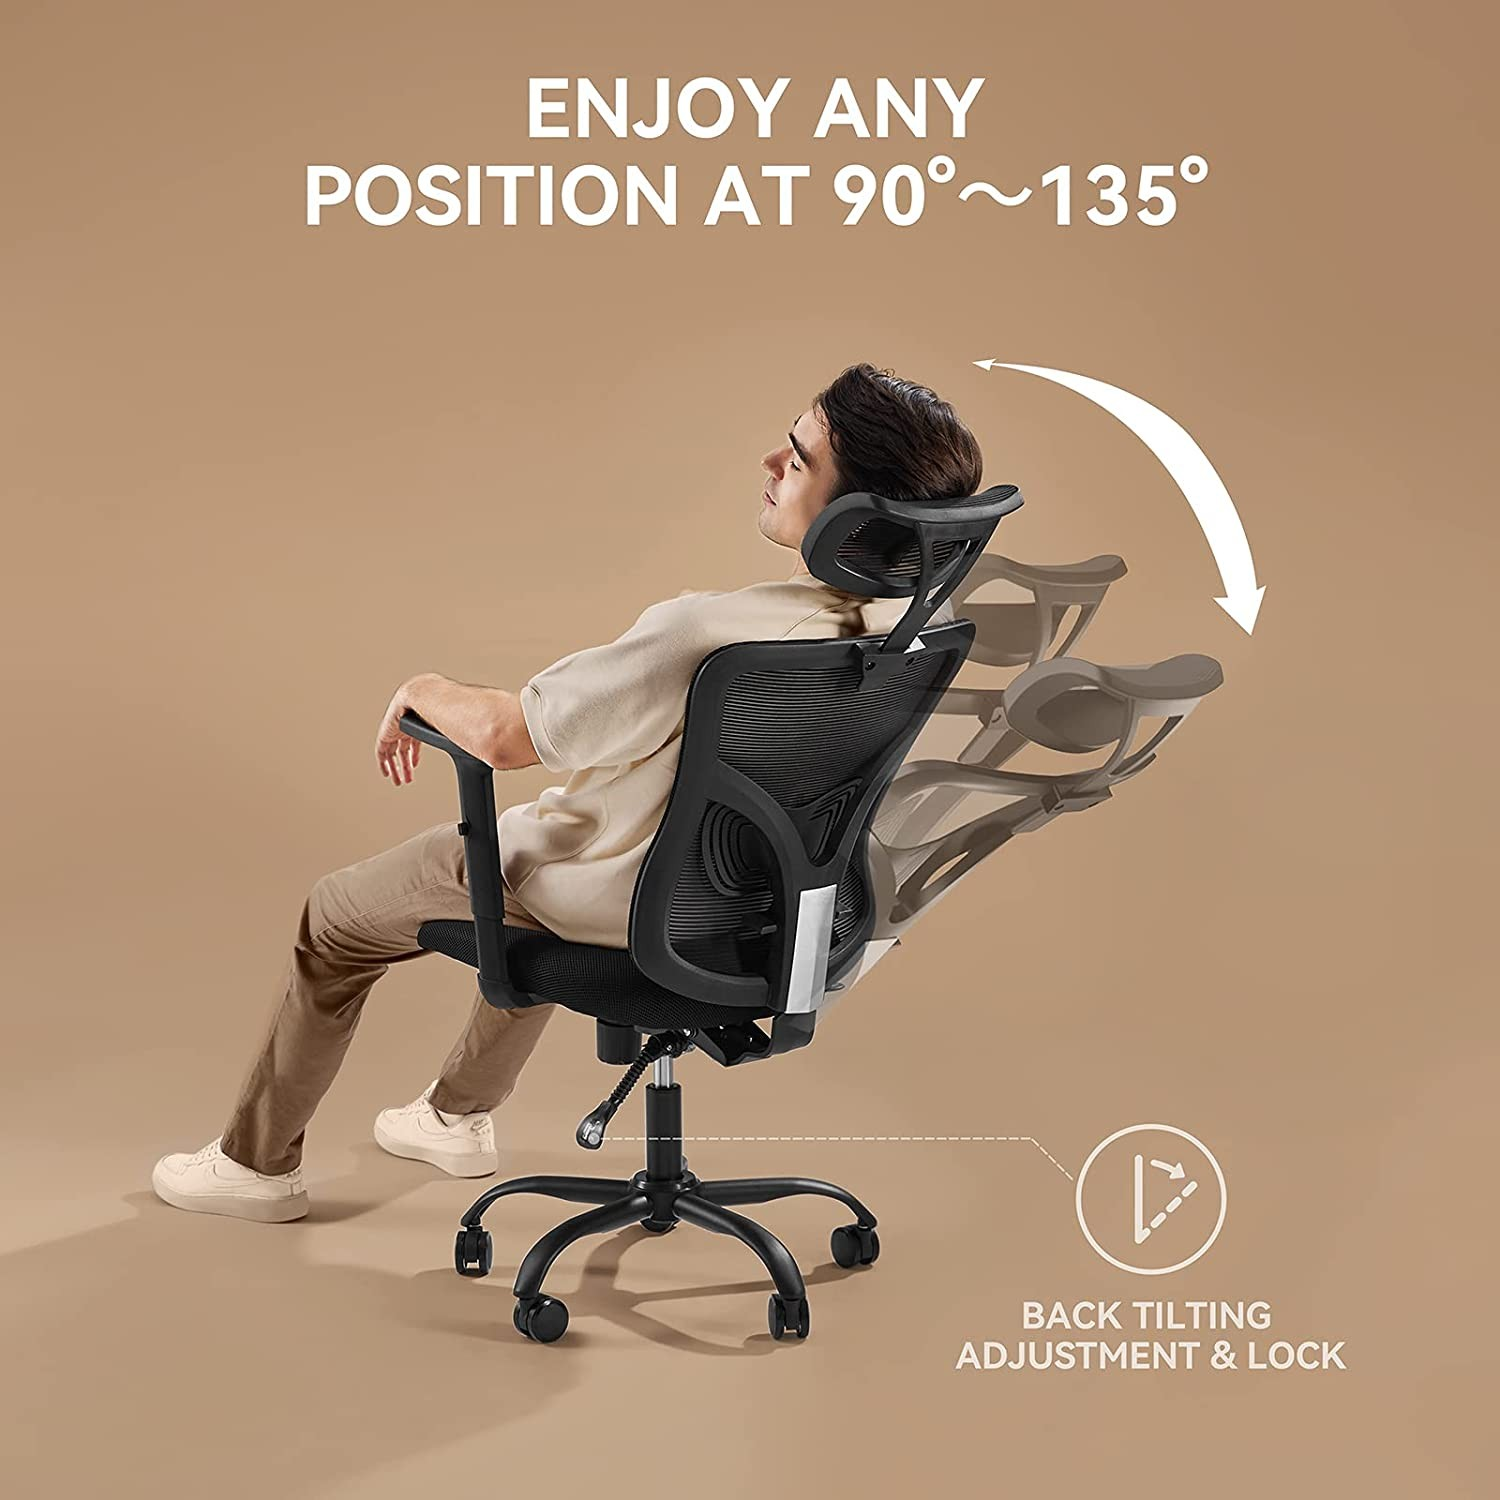 Haben ergonomische Stühle das Problem der sitzenden Tätigkeit wirklich gelöst?